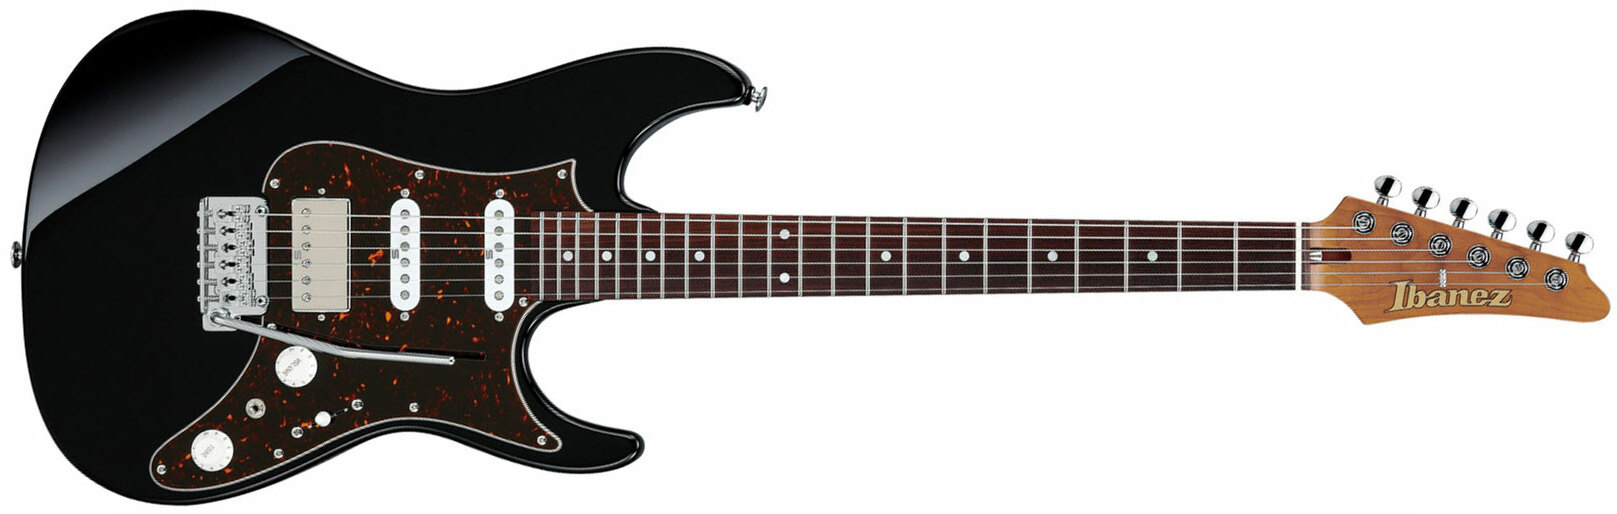 Ibanez Az2204b Bk Prestige Jap Hss Seymour Duncan Trem Mn - Black - Guitare Électrique Forme Str - Main picture